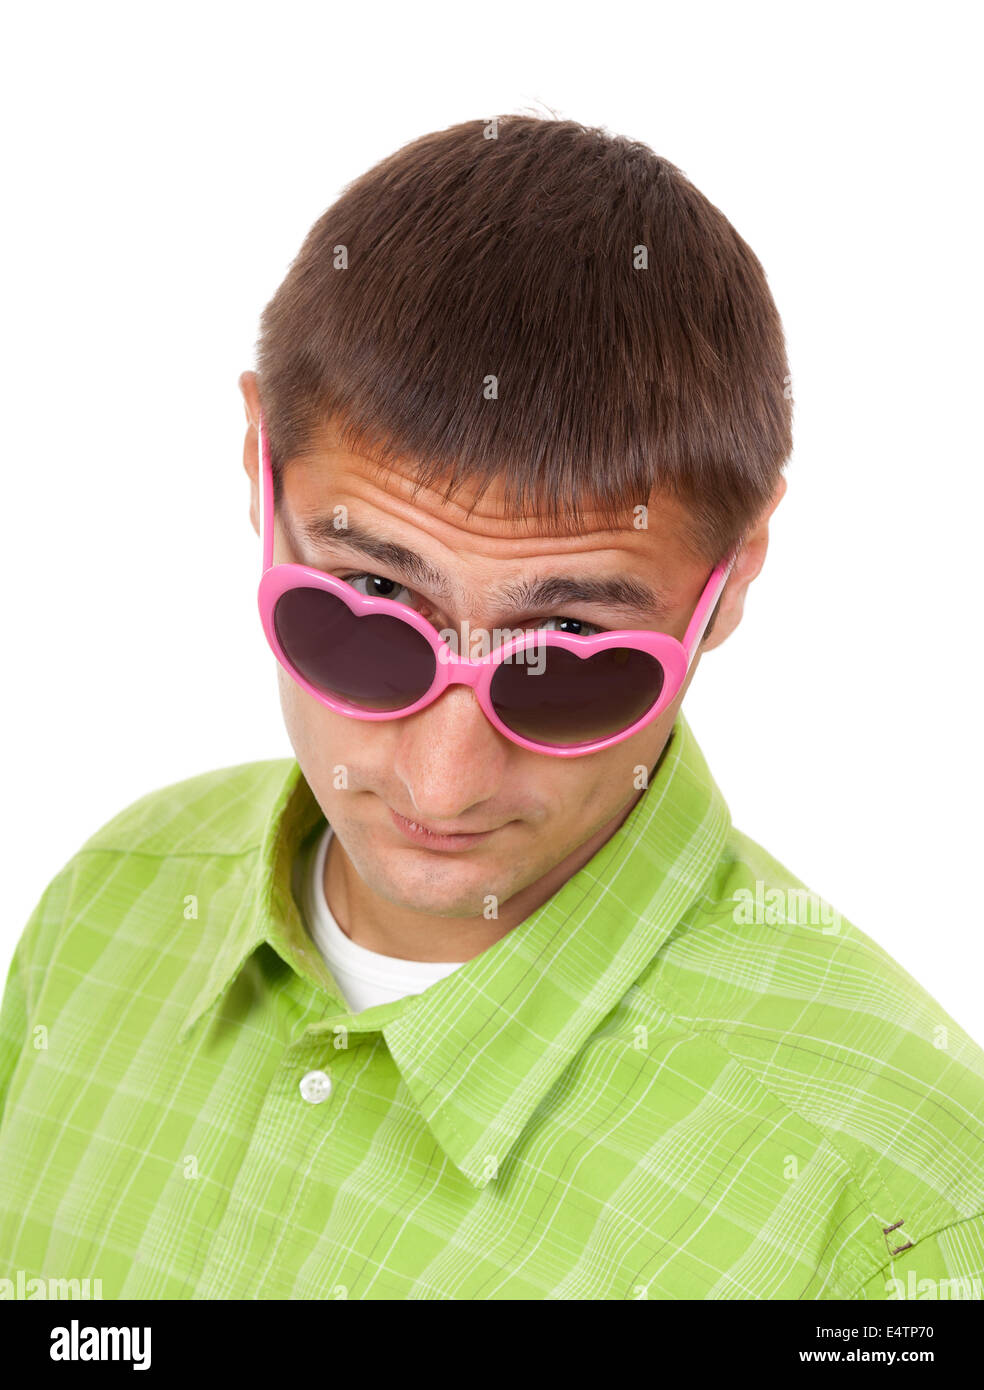 Porträt eines Mannes in lustige rosa Sonnenbrille Stockfotografie - Alamy